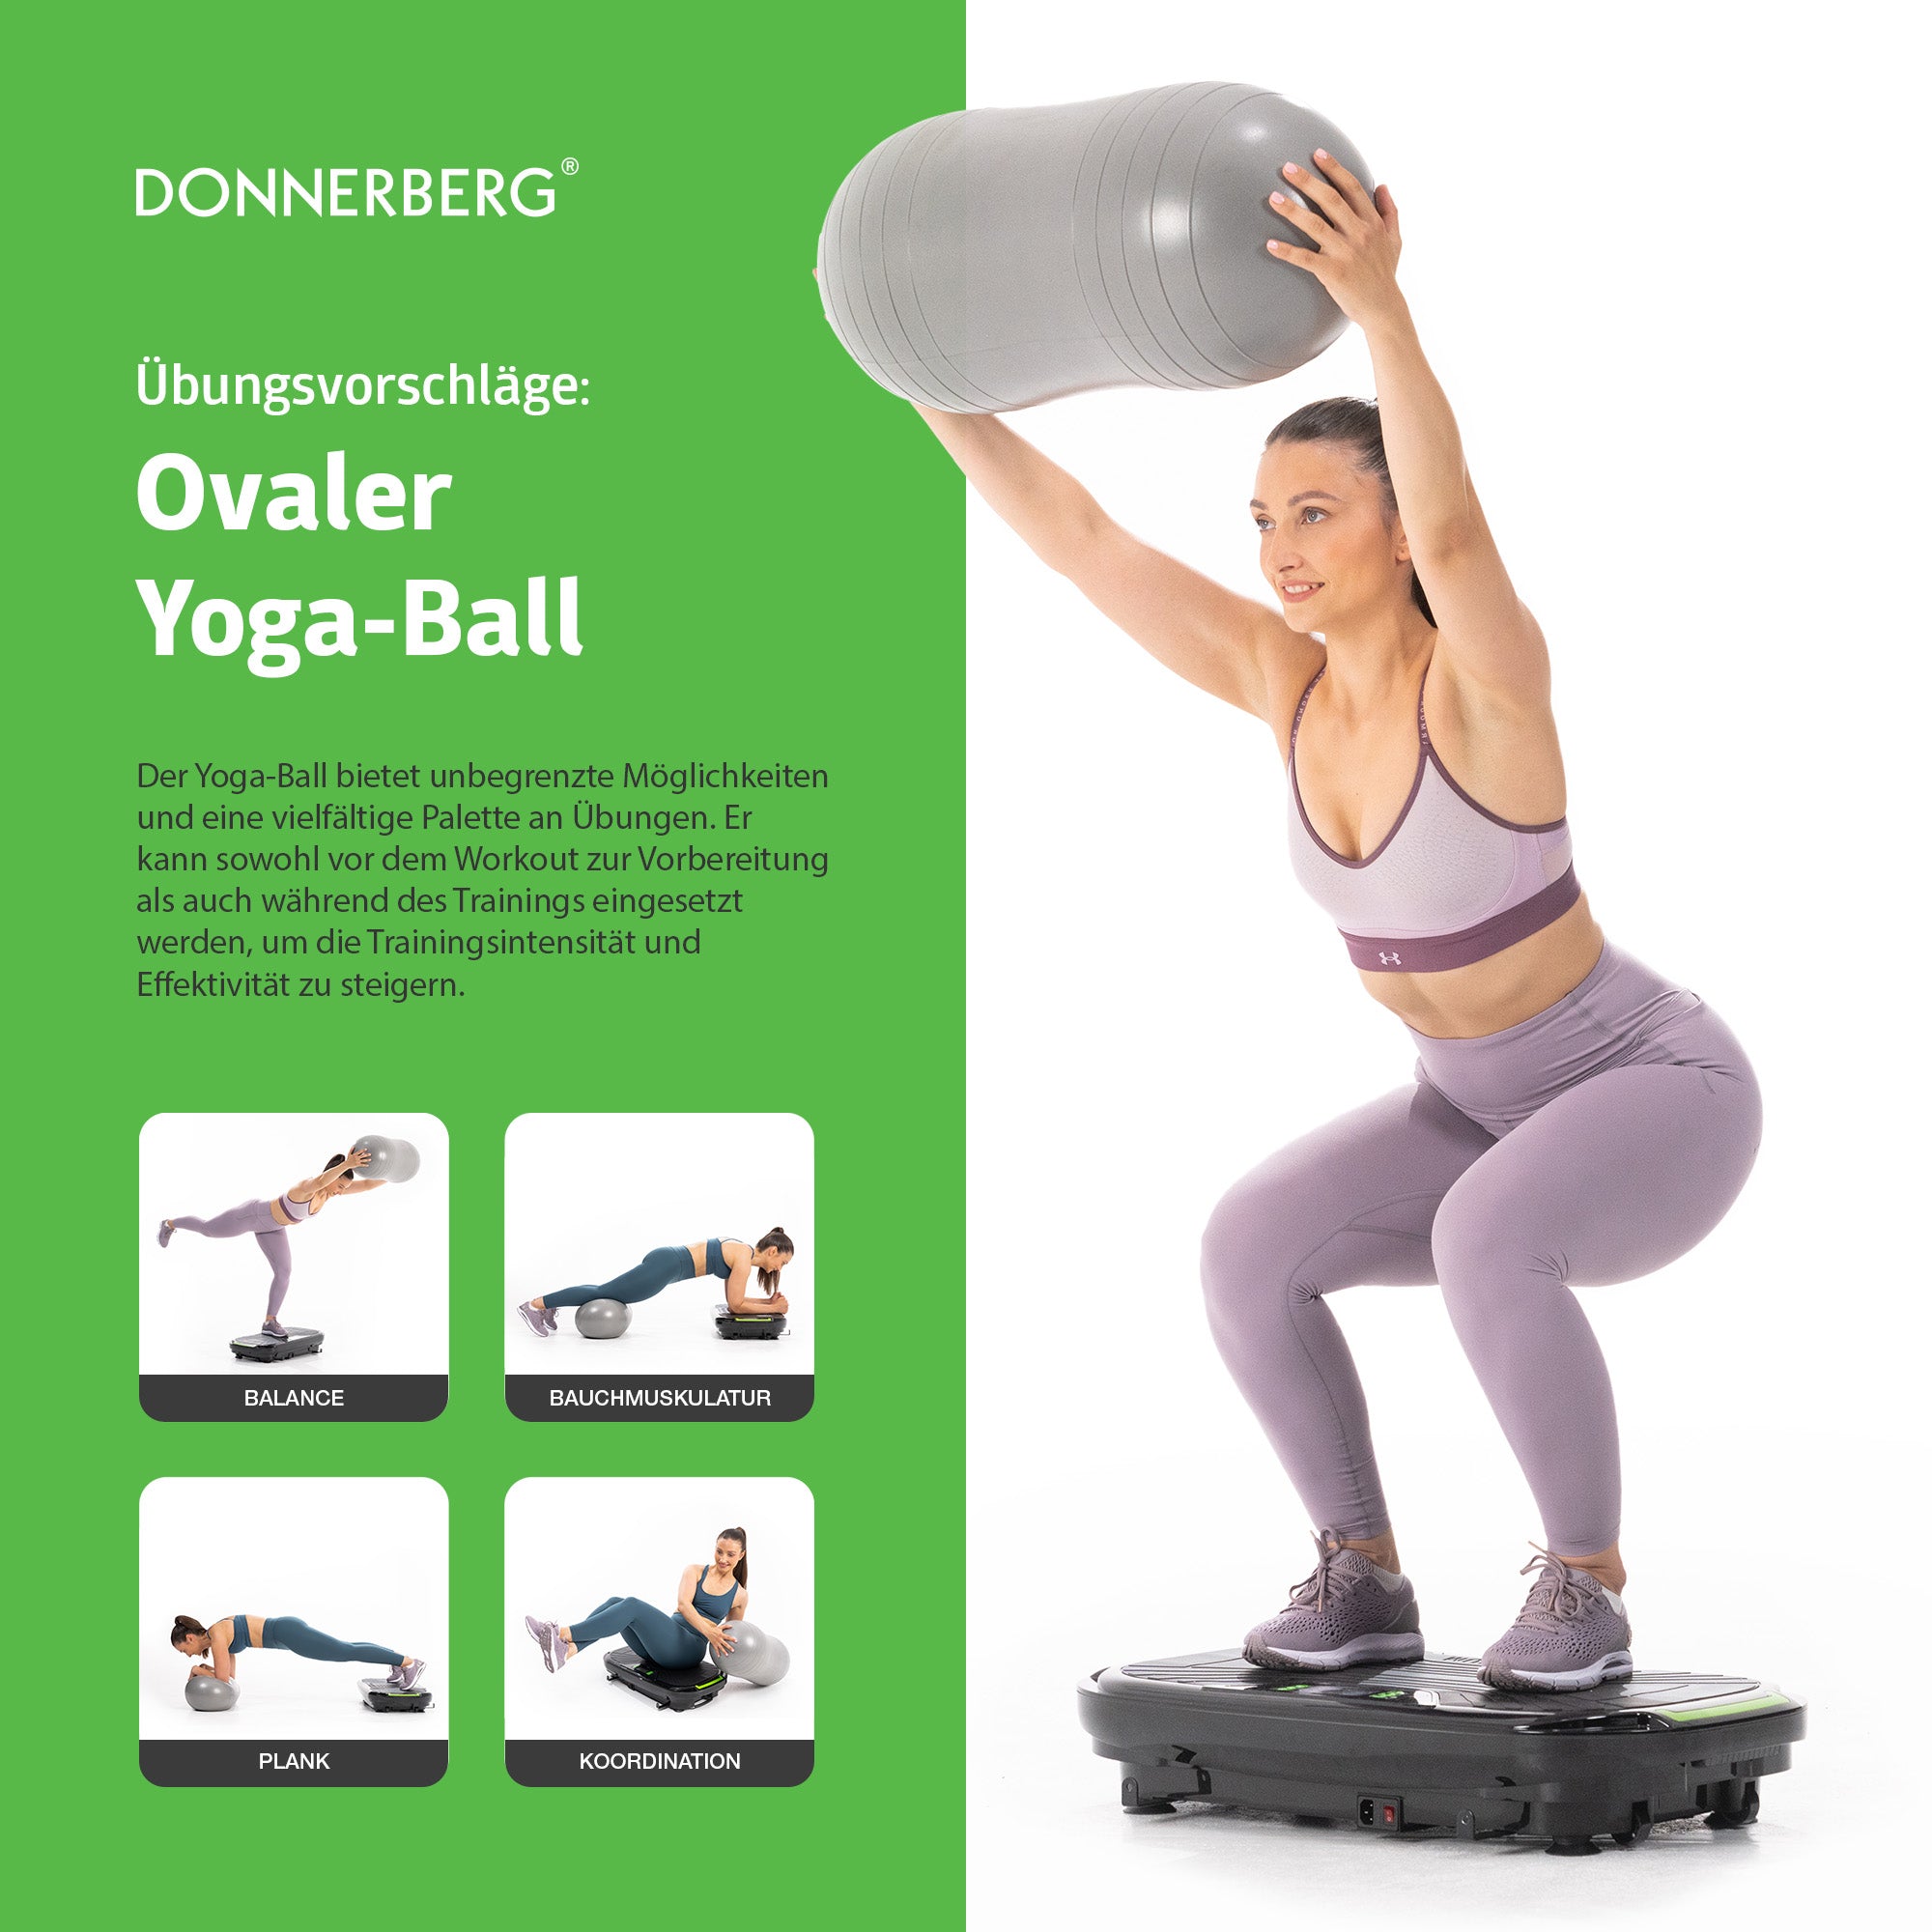 Zubehör im Set mit Vibroplatte Sport inkludiert: Ovaler Yoga-Ball. Übungsvorschläge